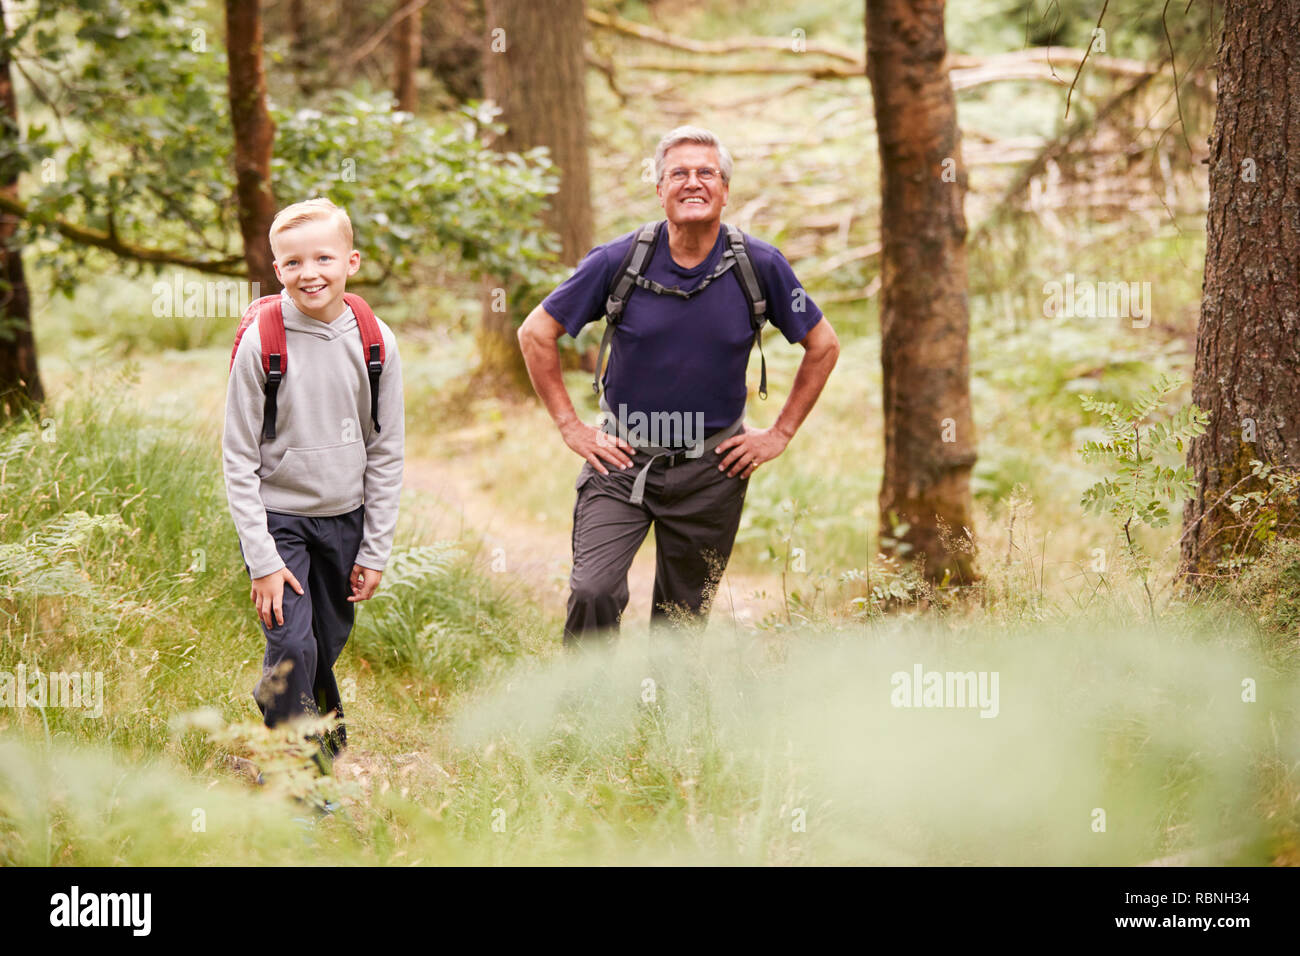 Grand-père et petit-fils de prendre une pause lors d'une randonnée dans une forêt, selective focus Banque D'Images